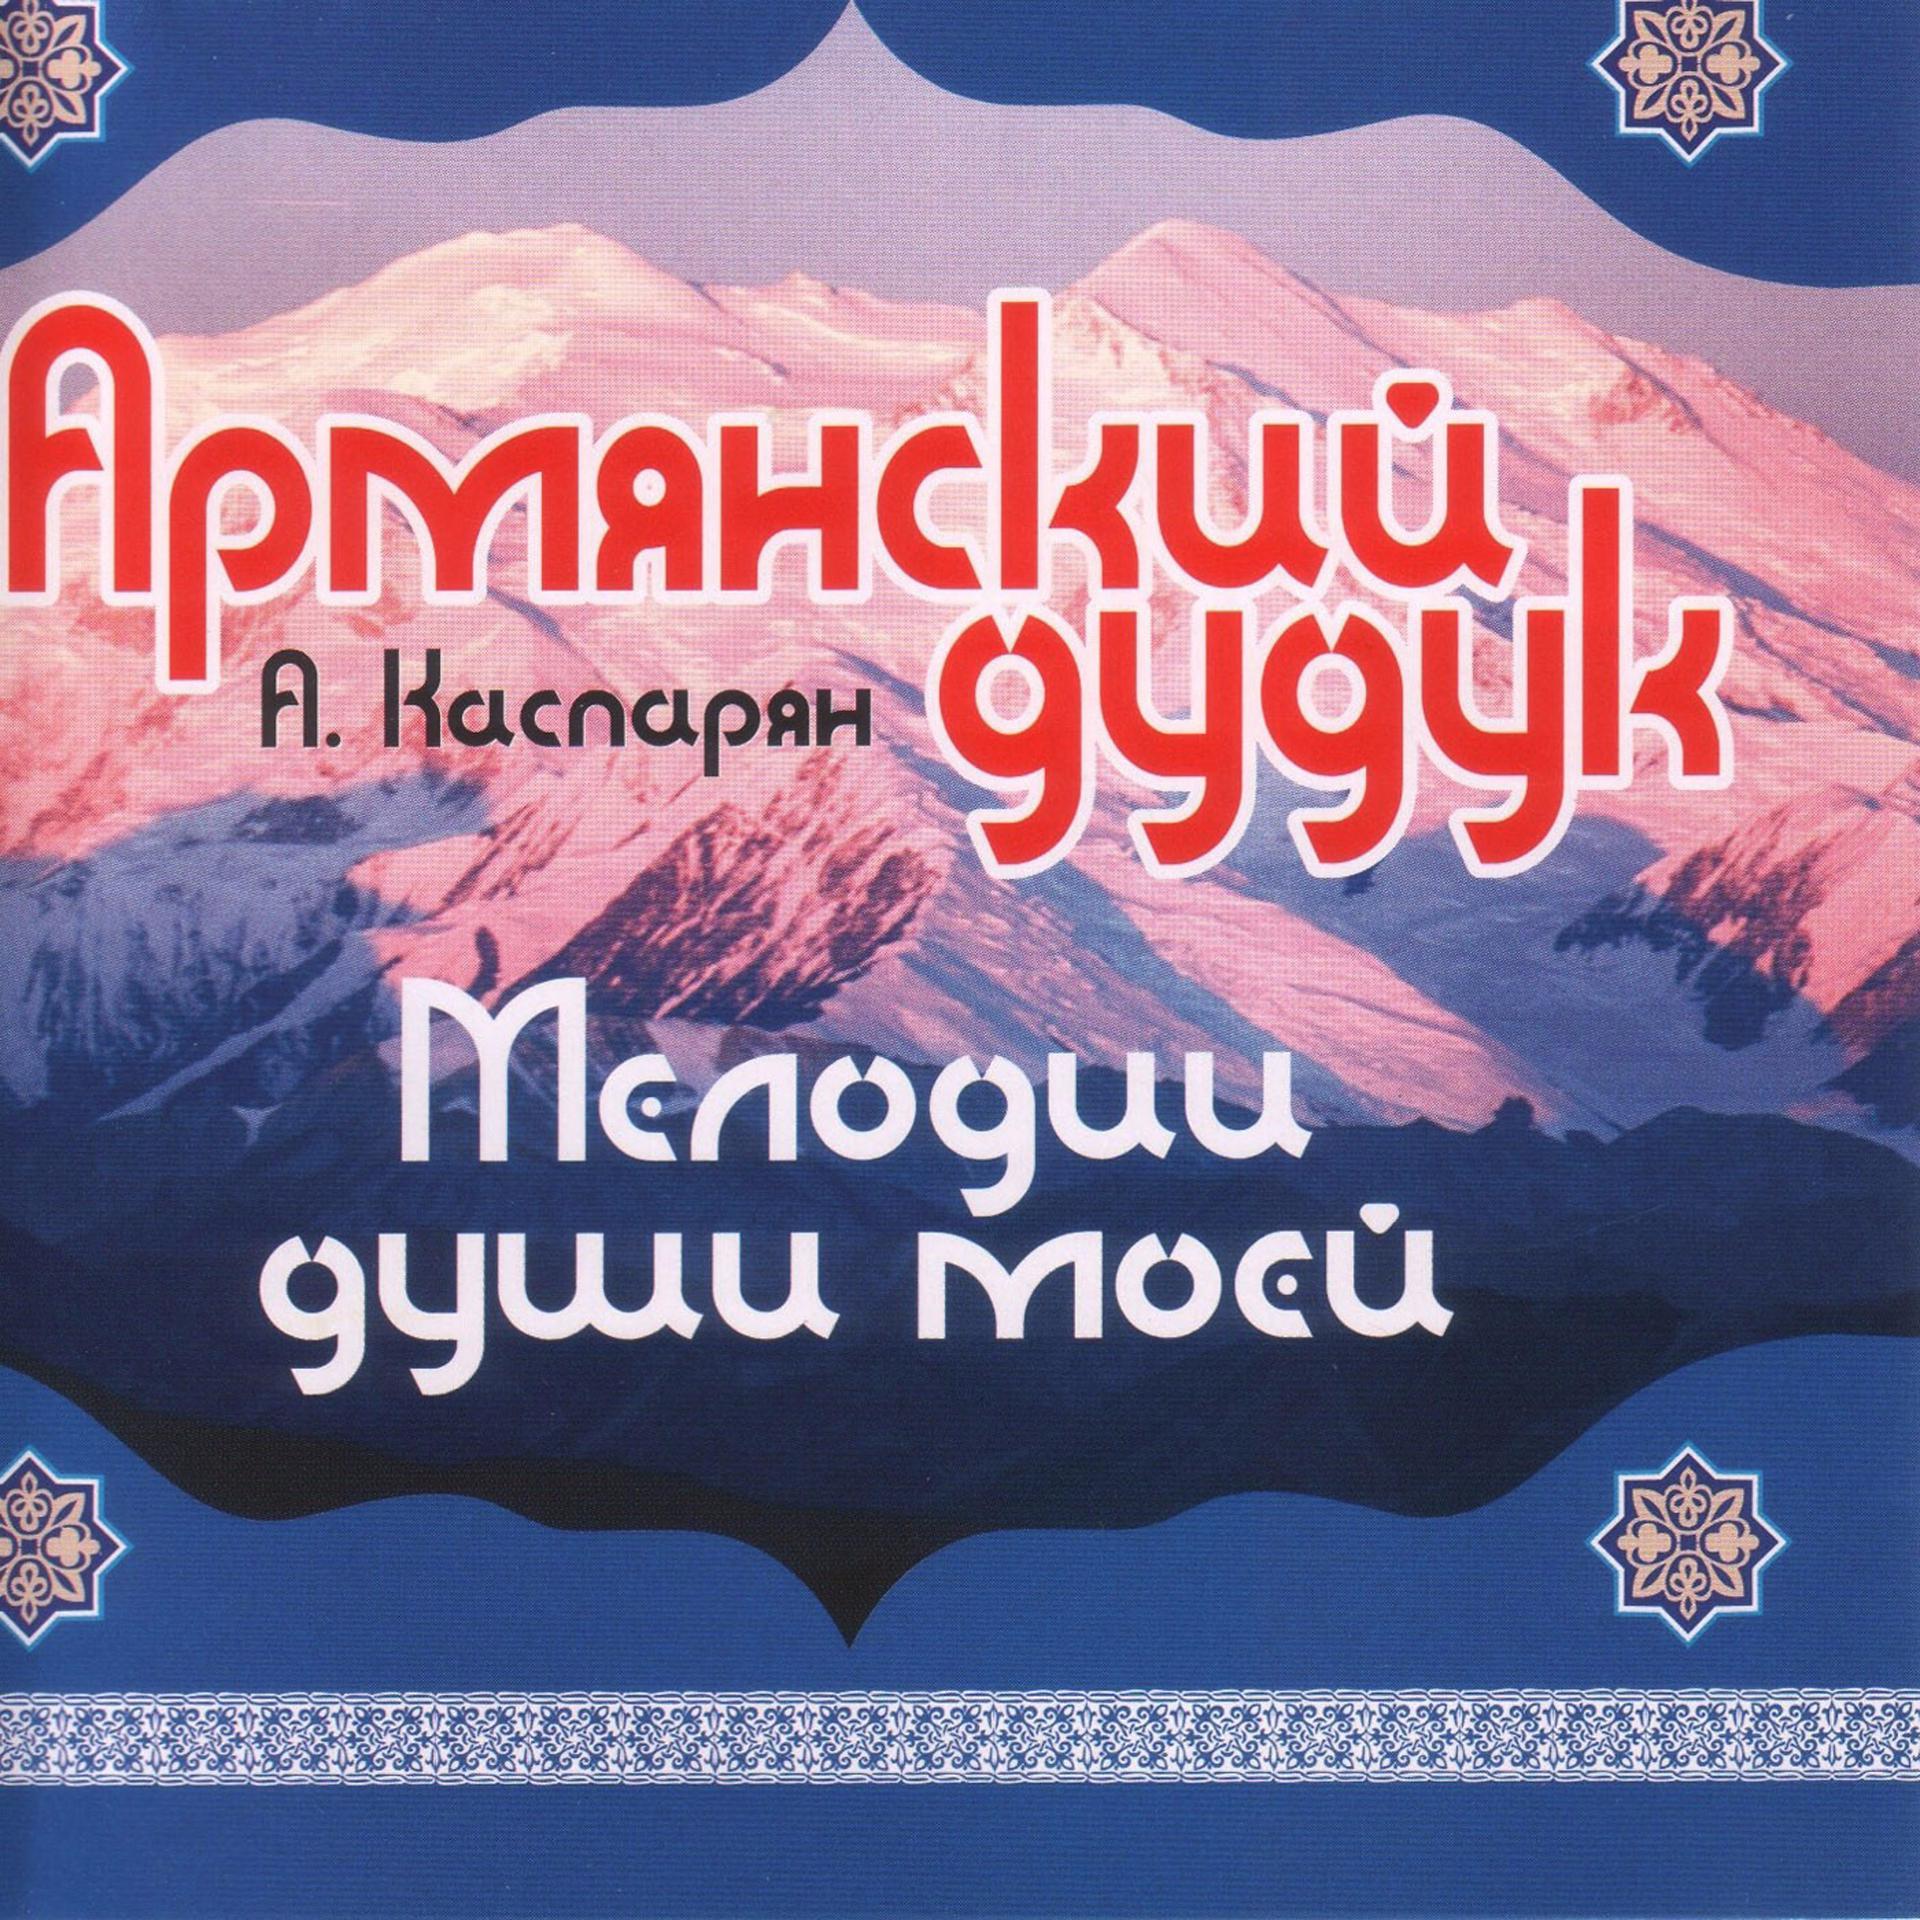 Армянская лучшая музыка слушать. Армянская обложка. Duduk обложка. Песня на армянском обложка.